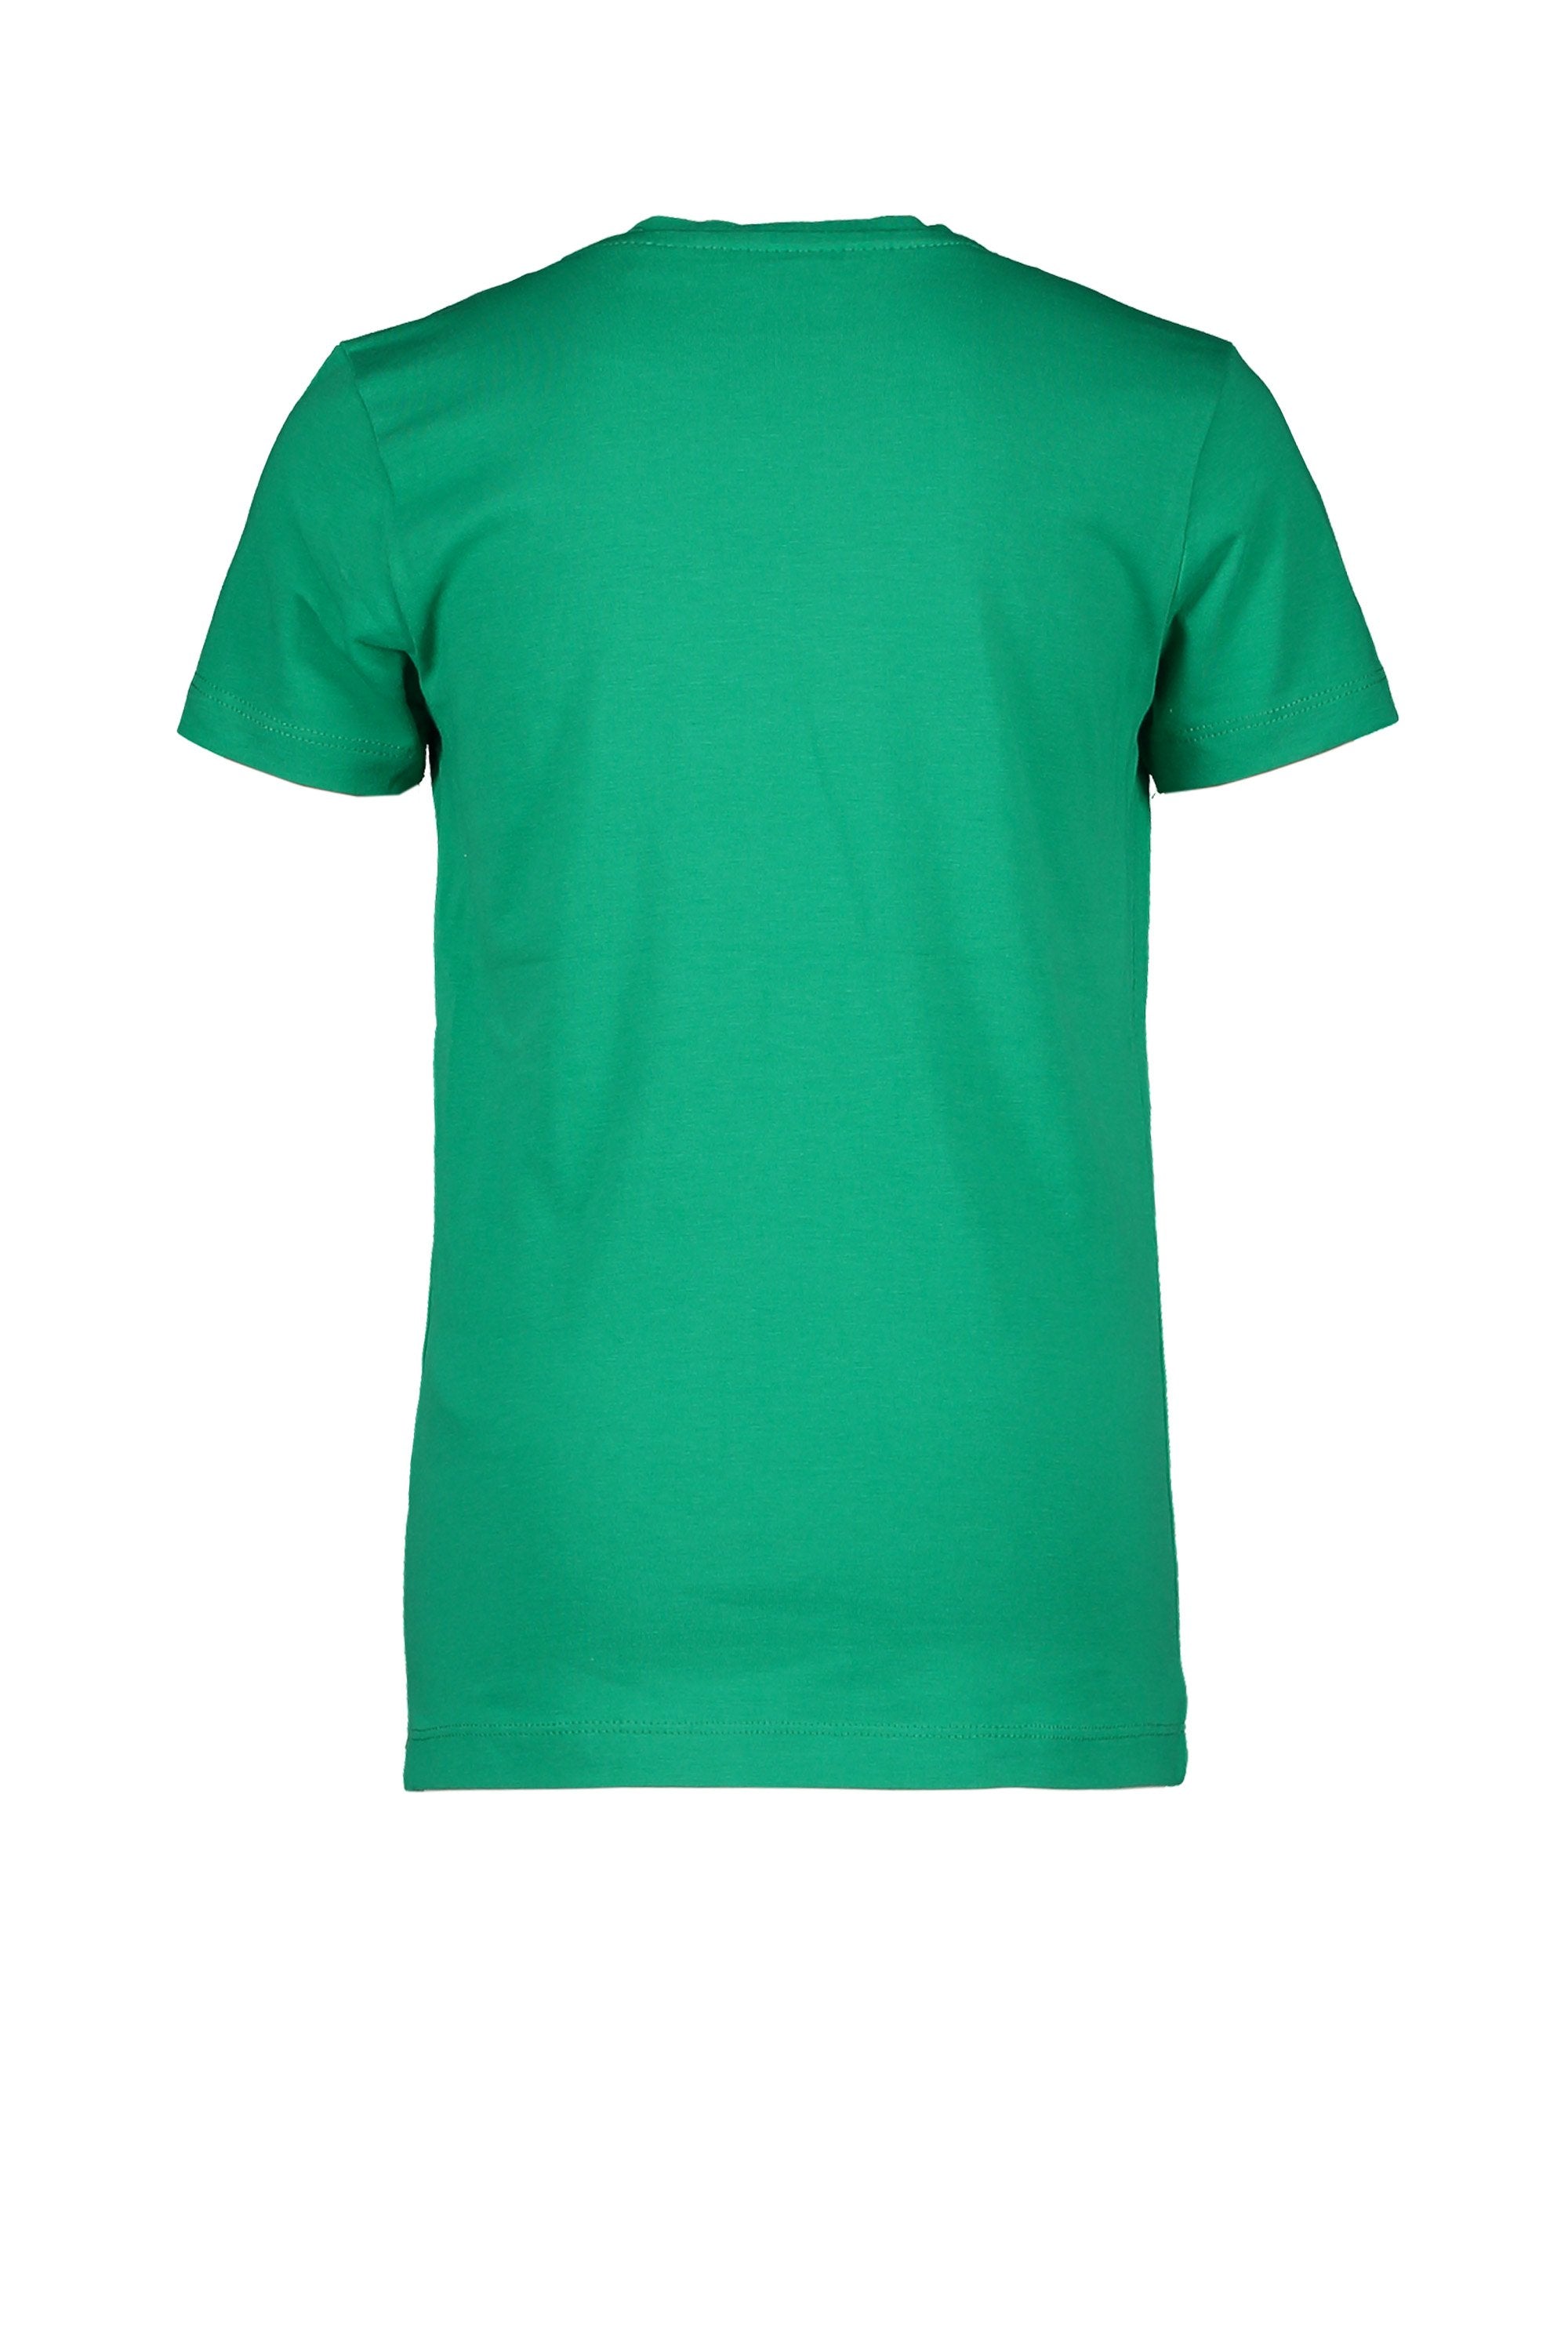 Meisjes T-Shirt Chestprint van Moodstreet in de kleur Green in maat 134/140.